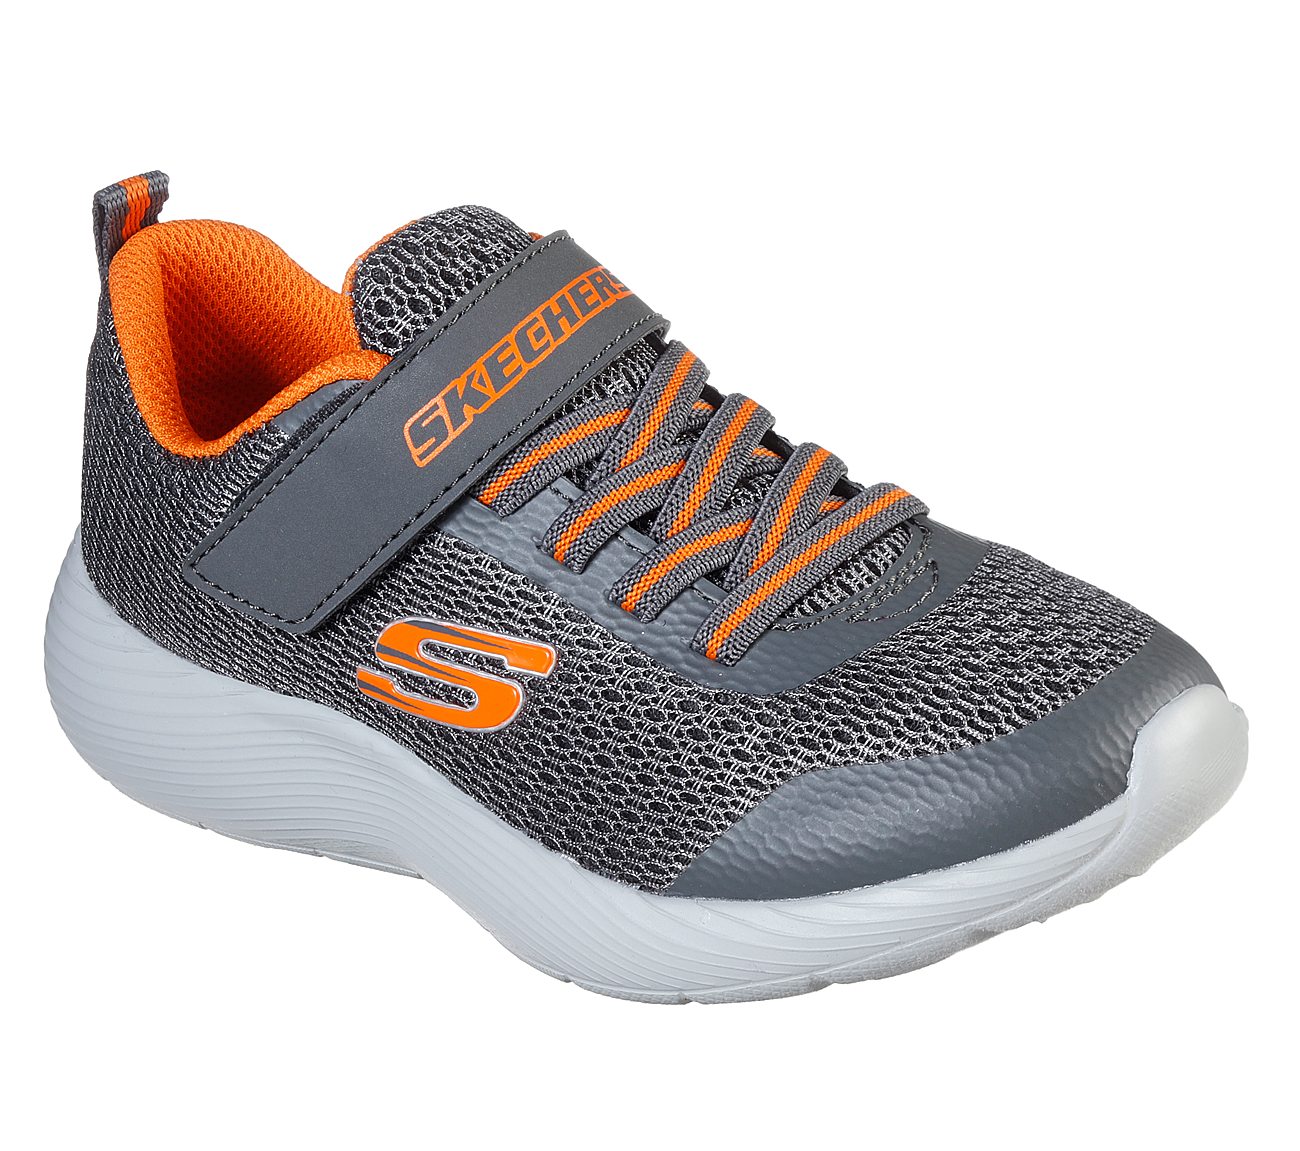 SKECHERS Dyna-Lite Slip-On Sneakers Shoes